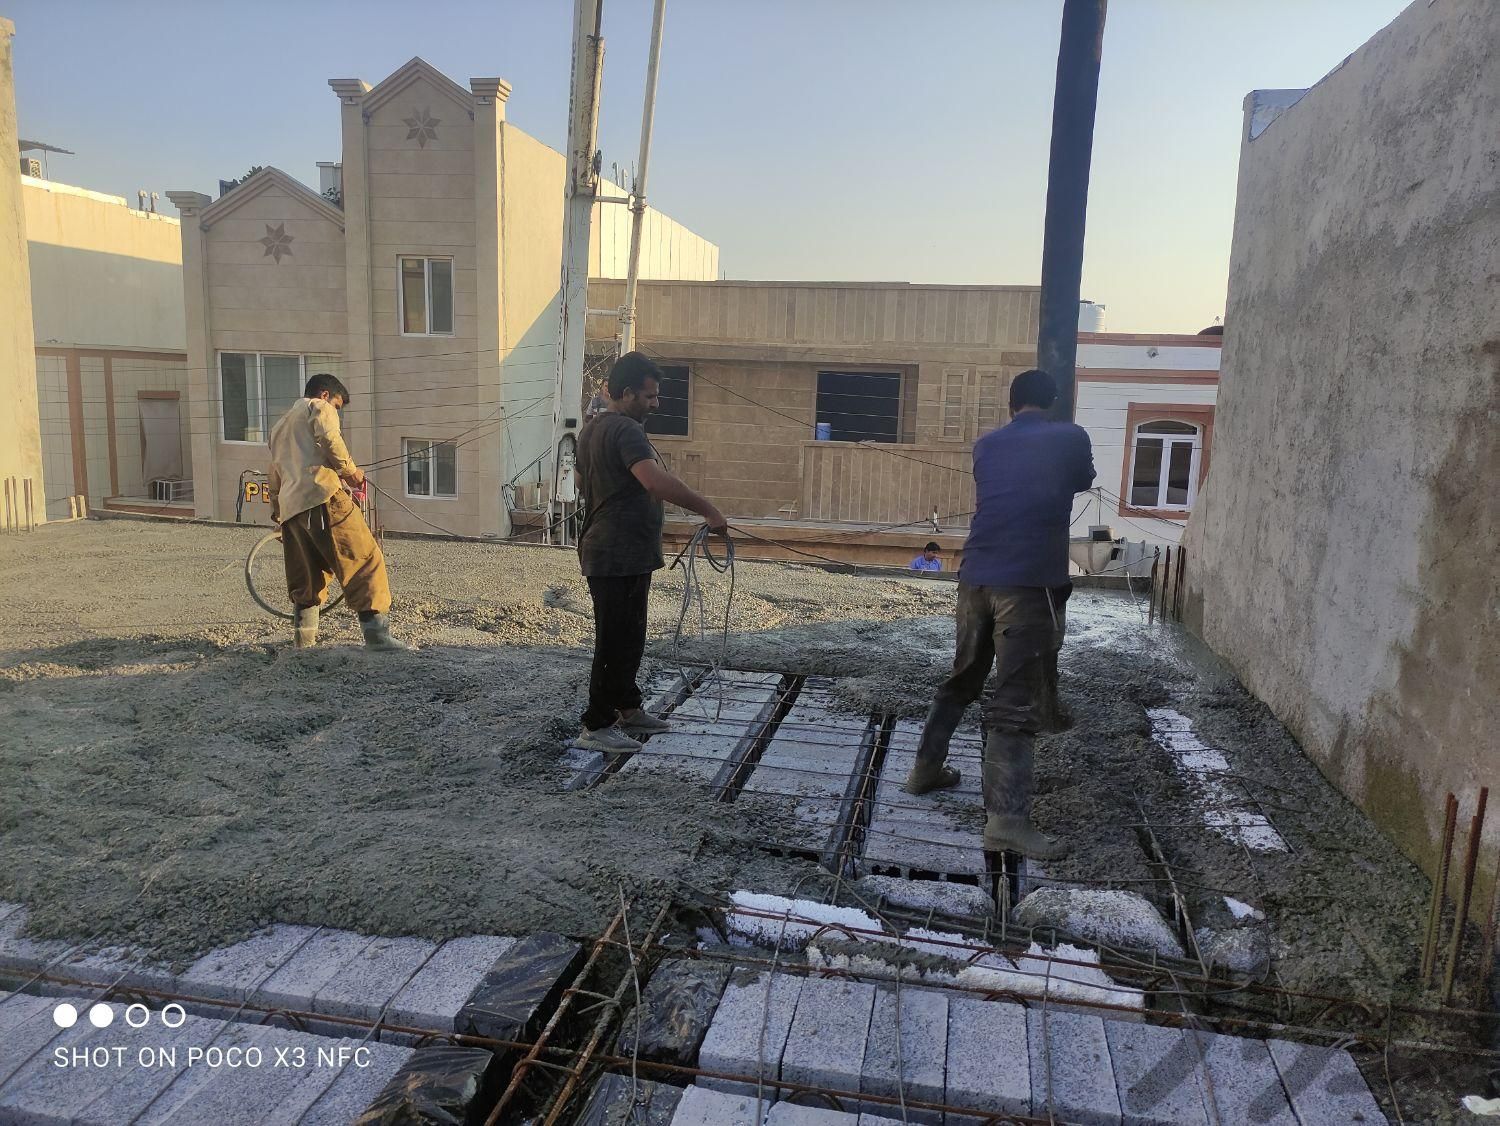 باز سازی ساختمان و پیمانکار ساخت صفر تا 100.|استخدام معماری، عمران و ساختمانی|بوشهر, |دیوار